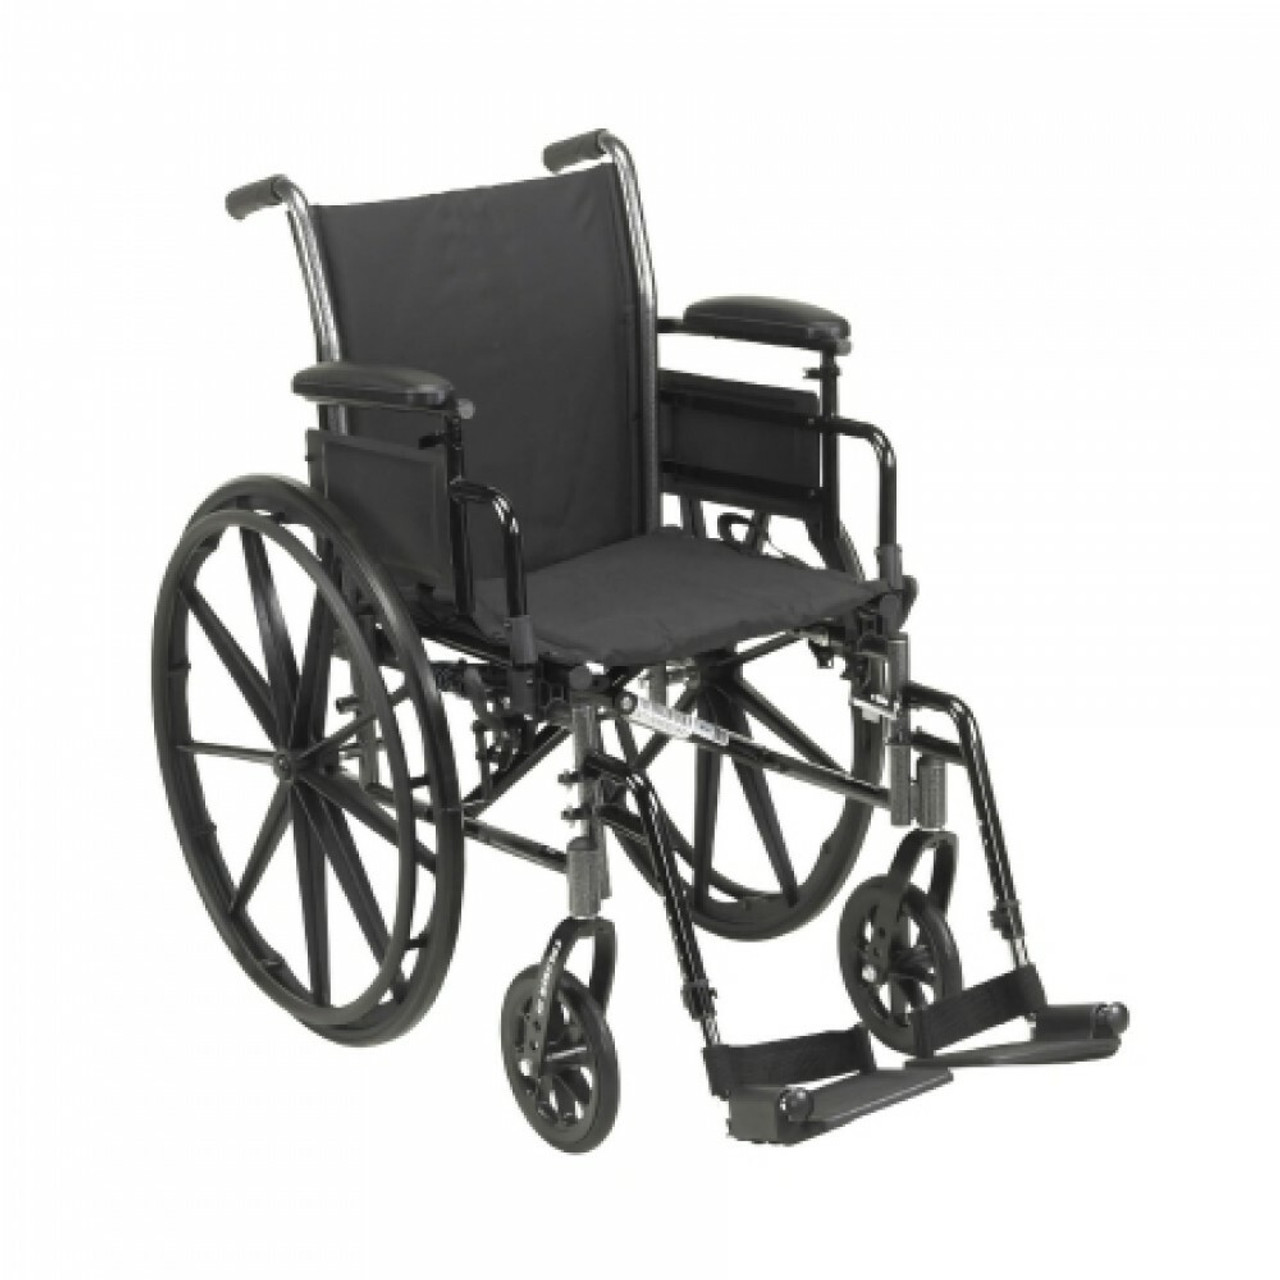 Wheelchairs